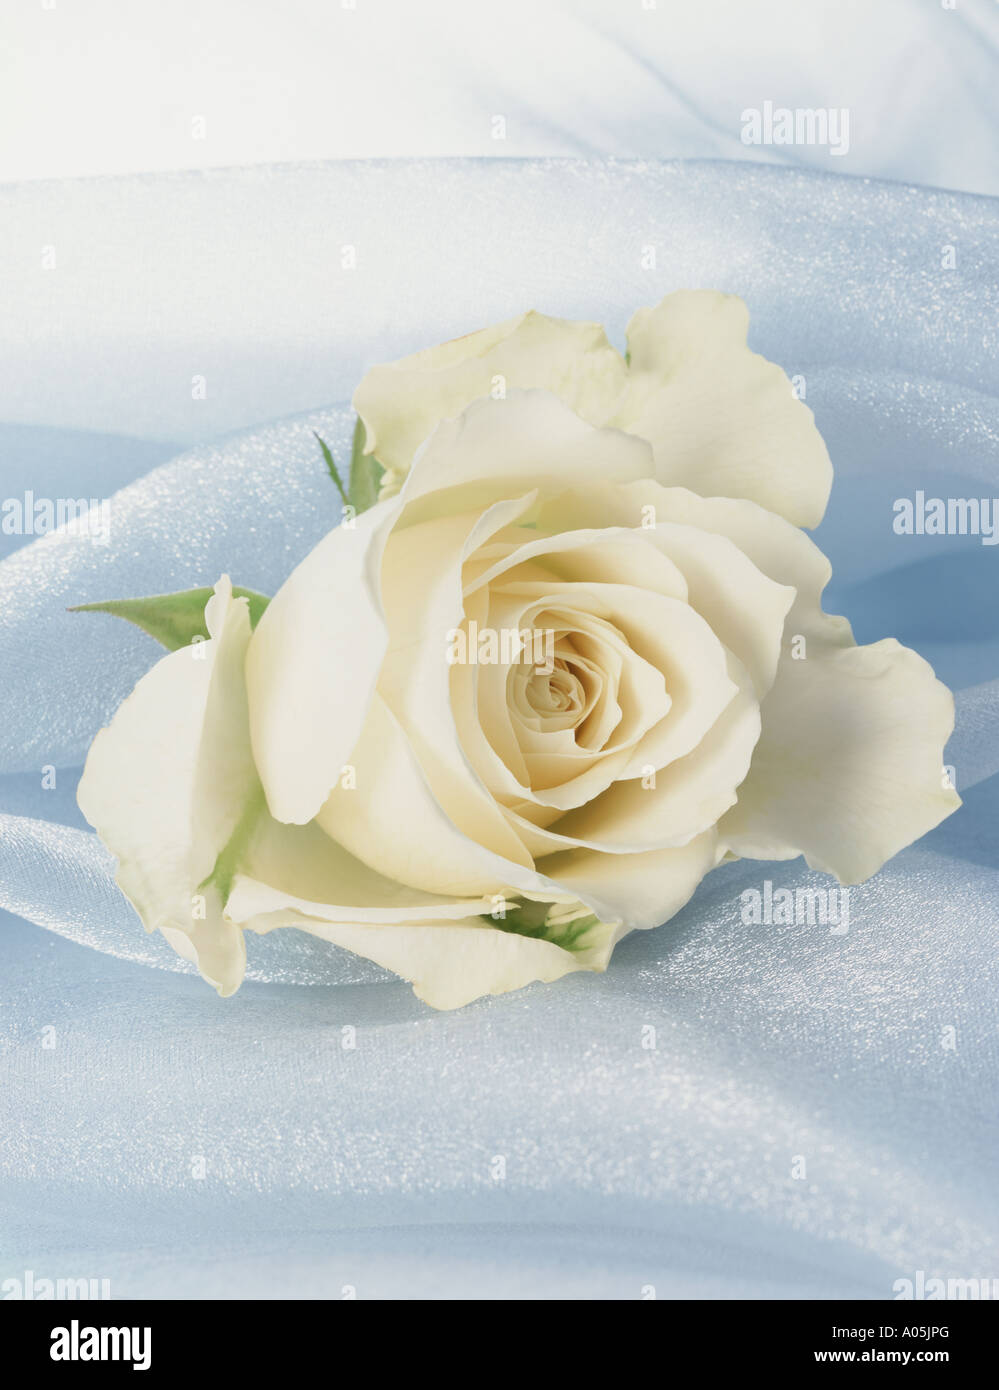 Une rose blanche sur un fond de soie Banque D'Images